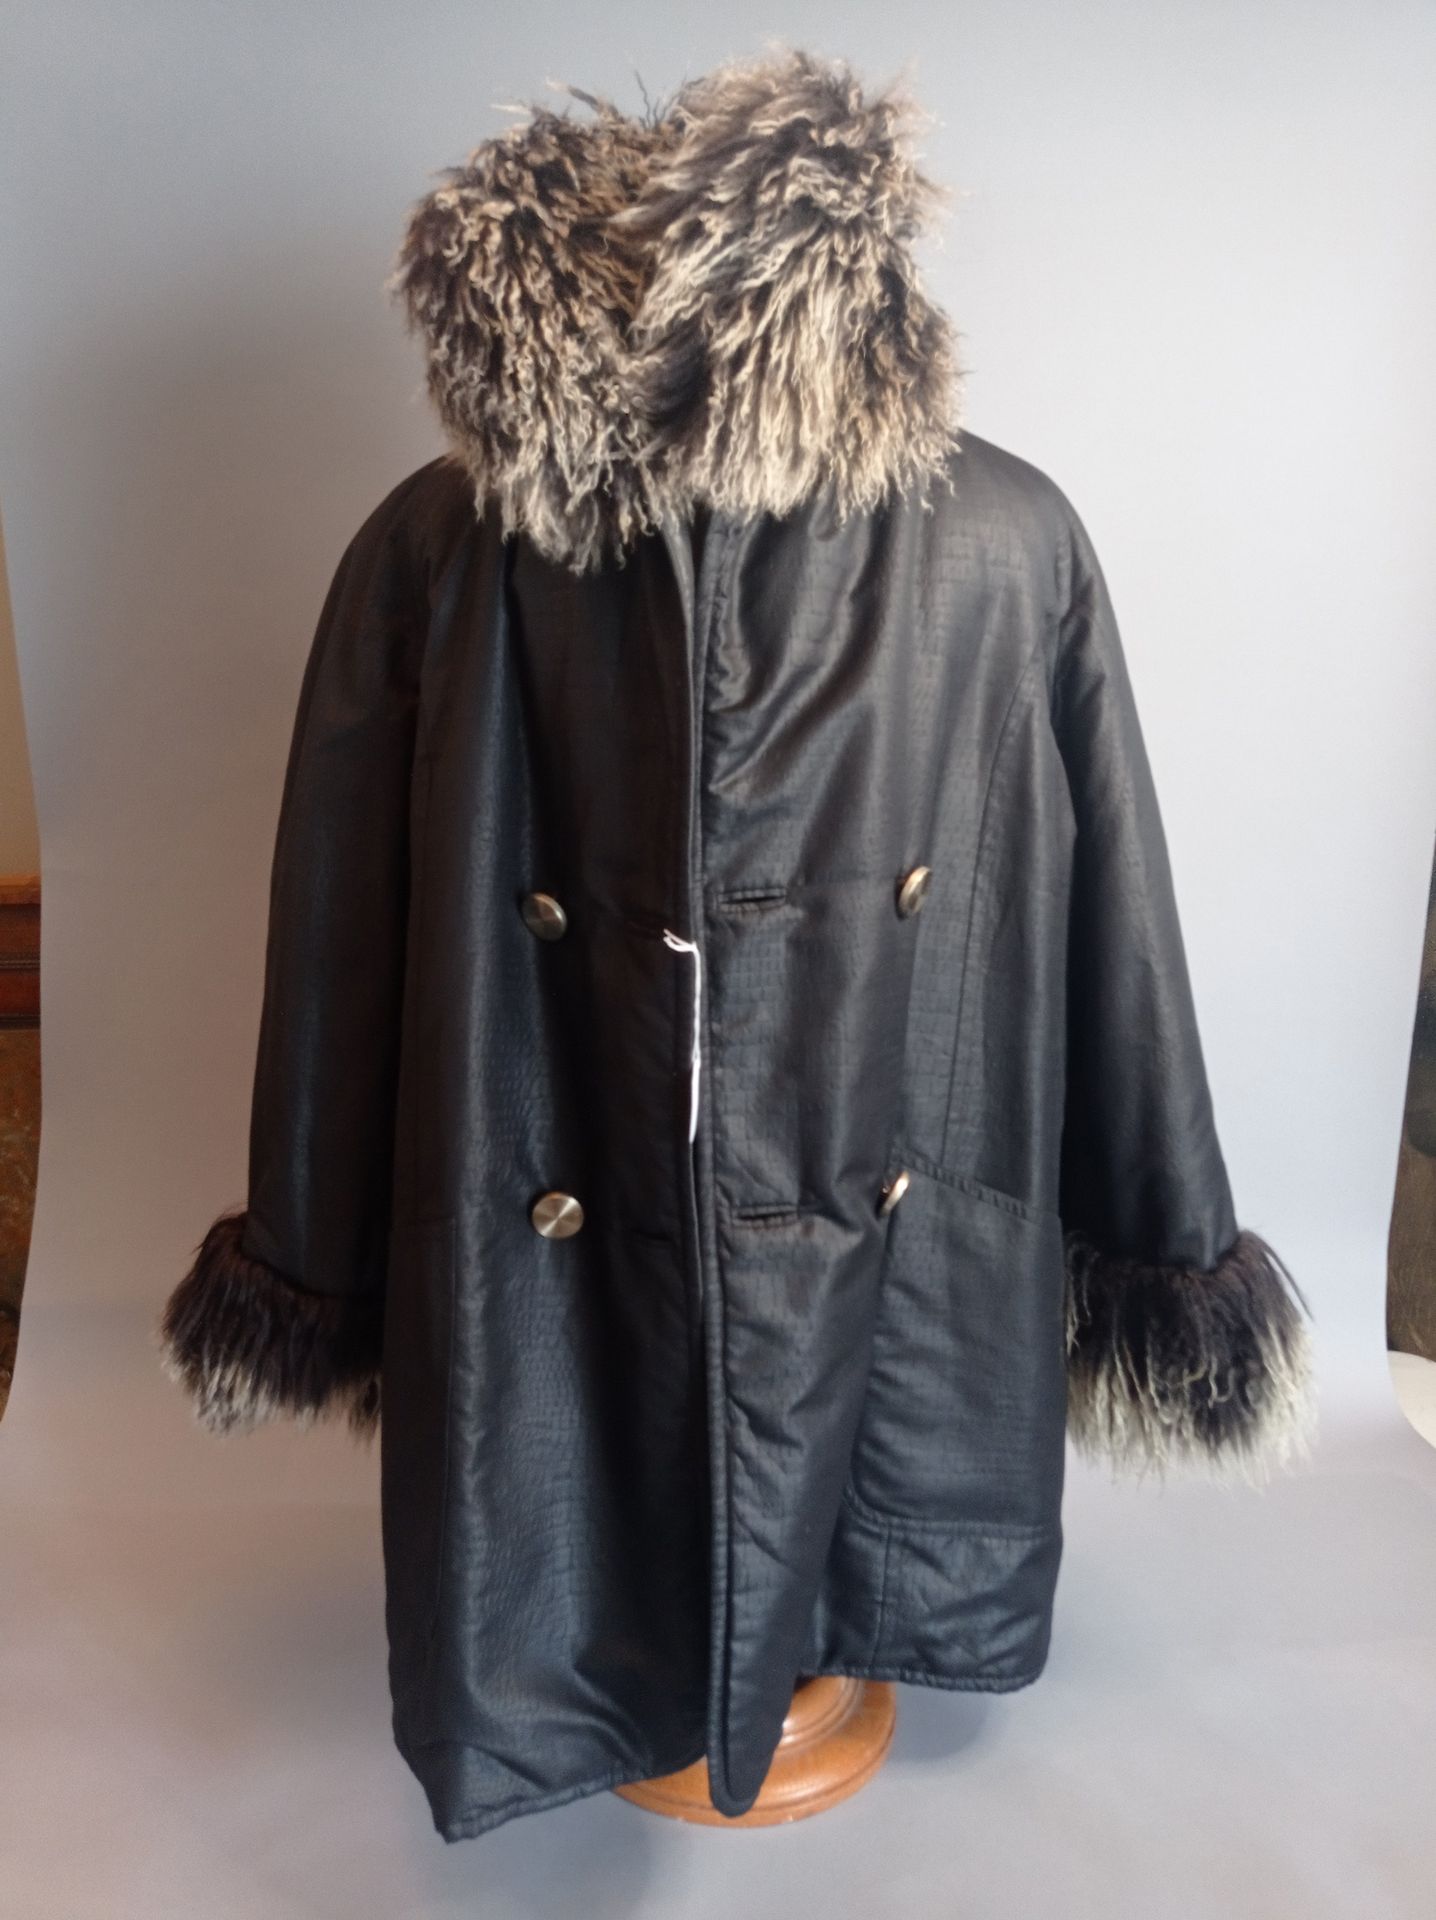 CHRISTIAN DIOR Reversible coat, fur collar